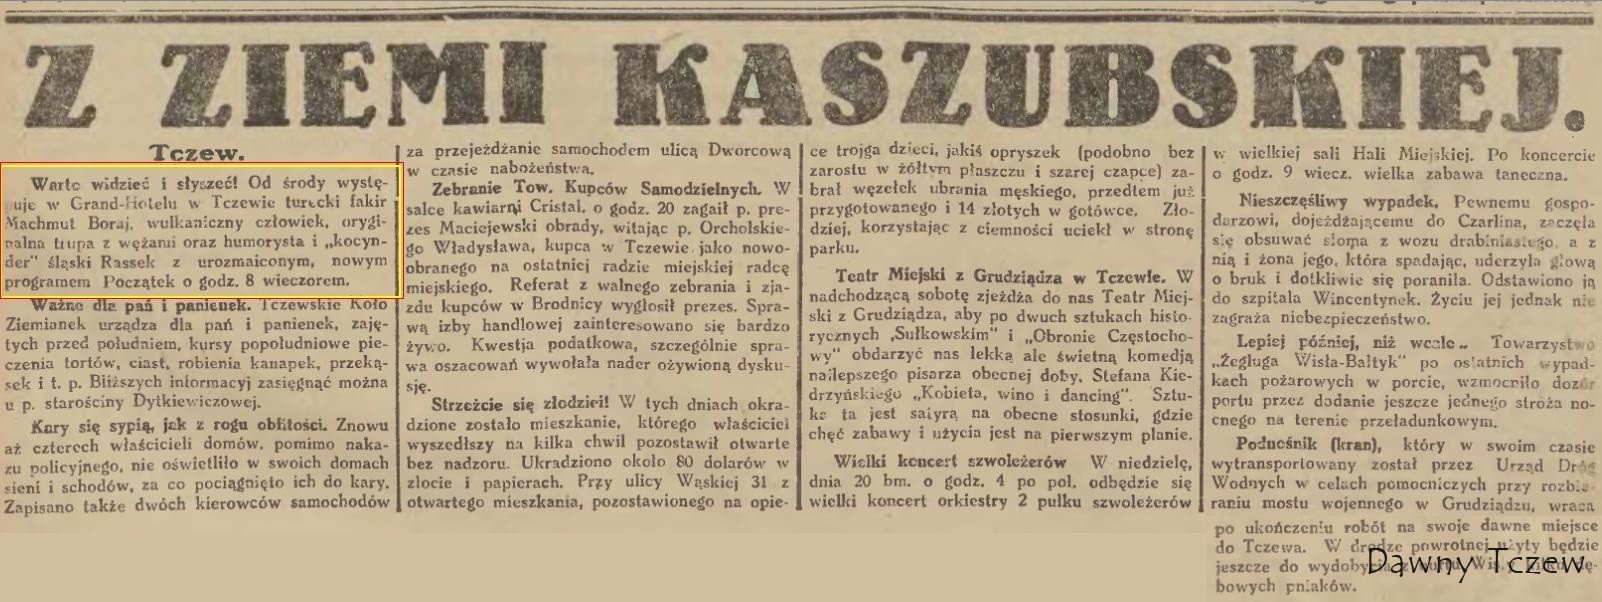 Gazeta Gdańska 20 listopada 1927.JPG